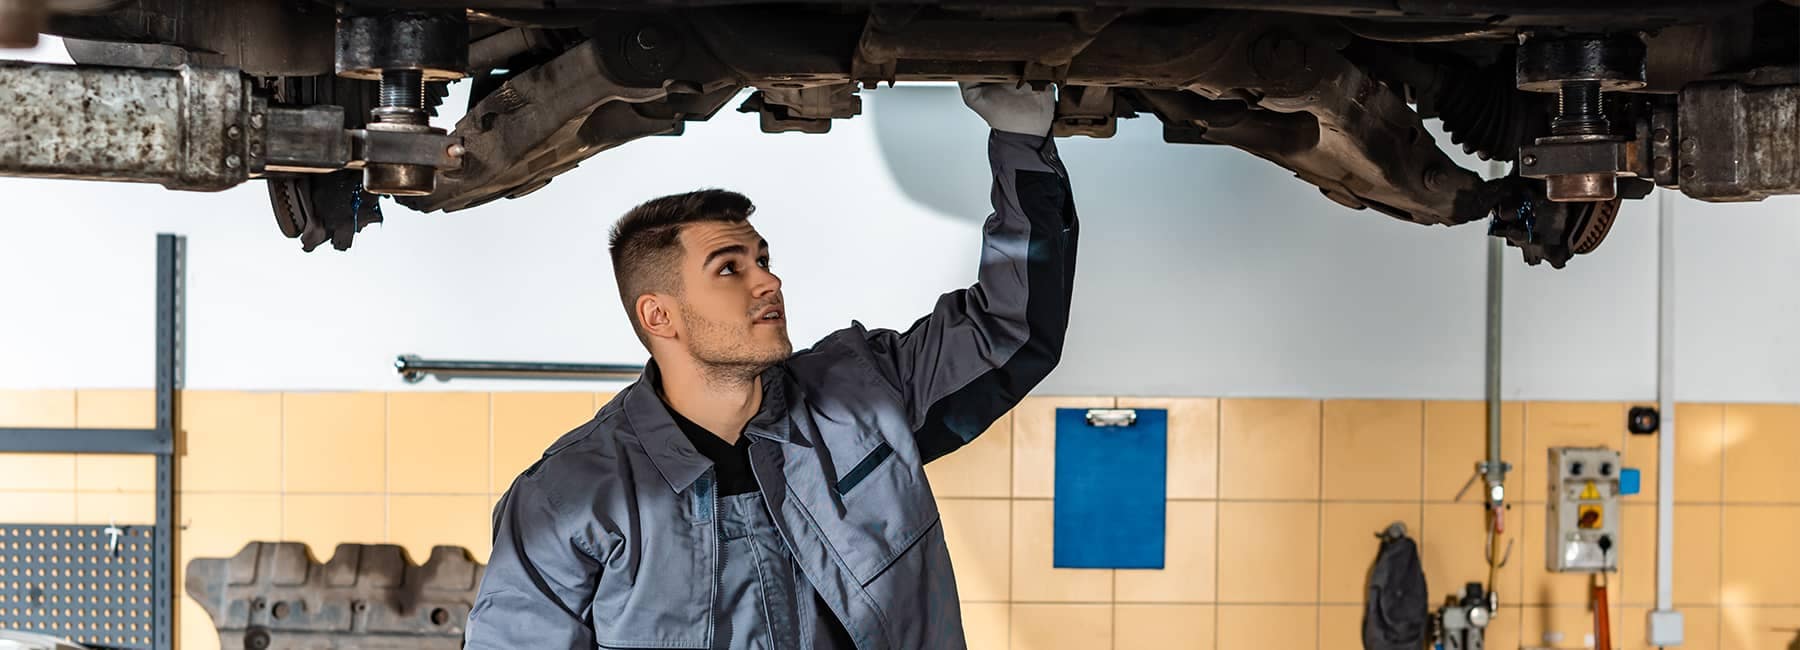 Mechanic reviews a car repair